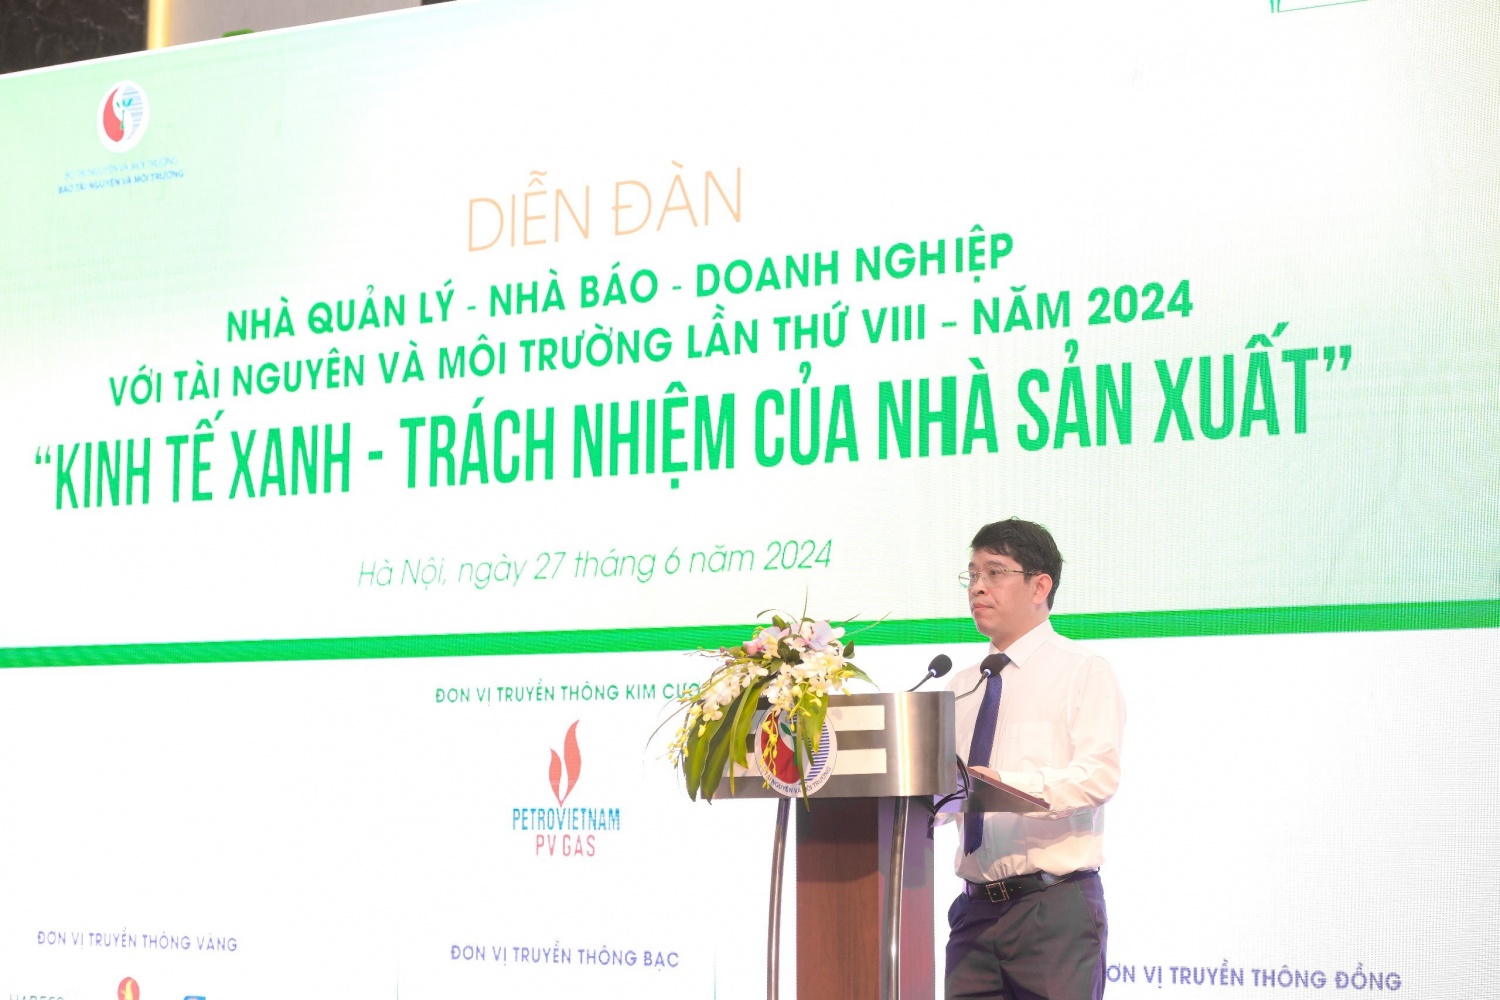 PGS.TS Nguyễn Đình Thọ: Chuyển đổi kinh tế xanh là yêu cầu bắt buộc”